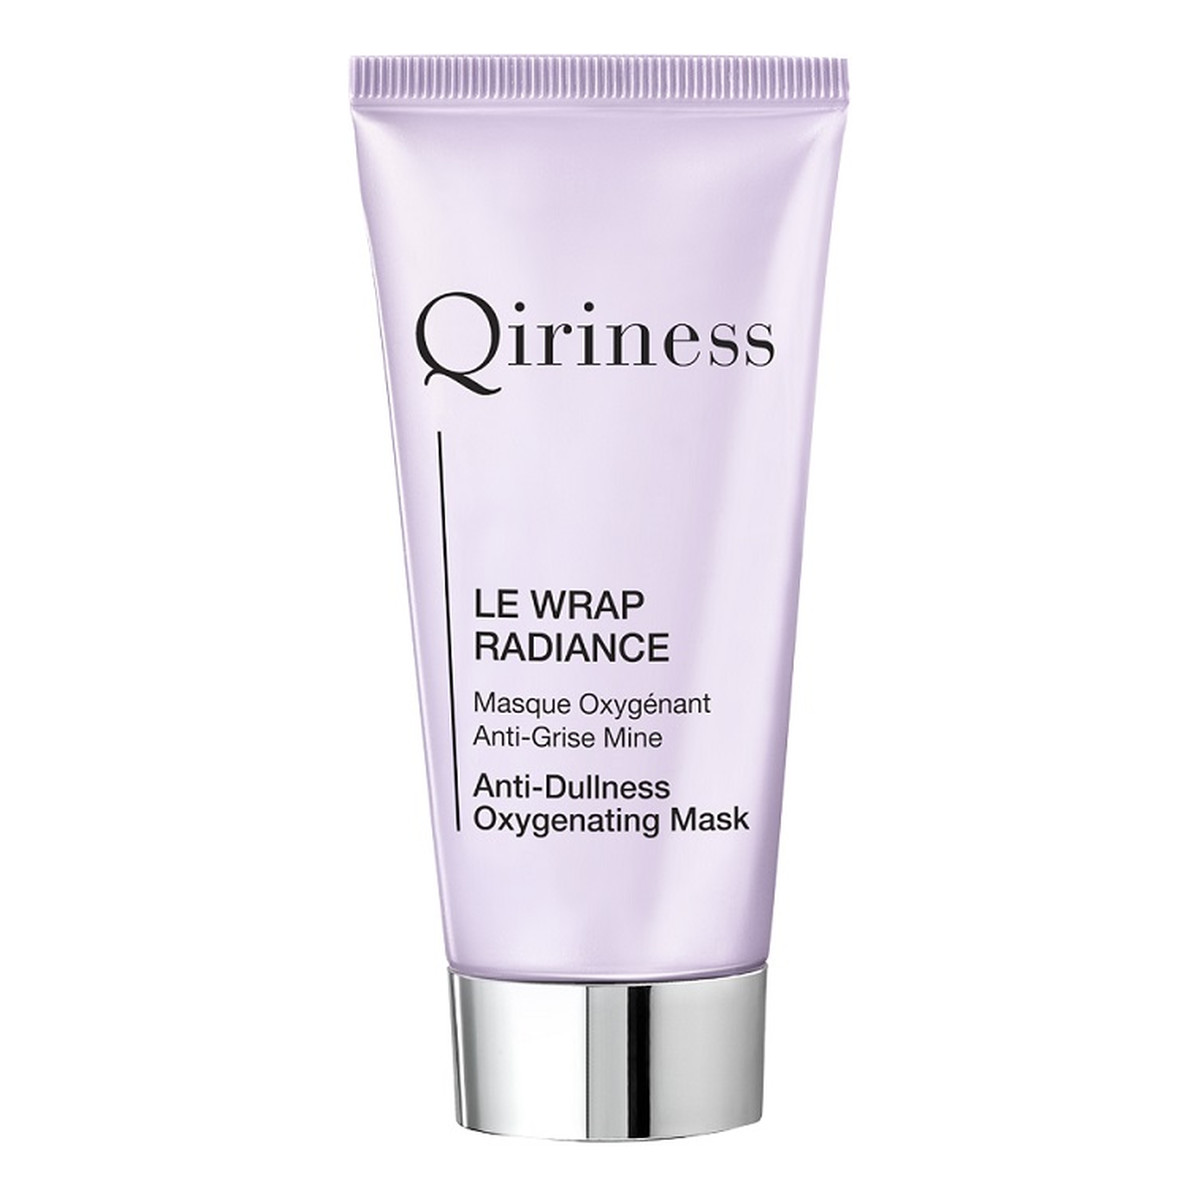 Qiriness Le Wrap Radiance maska dotleniająca i ożywiająca koloryt skóry 50ml